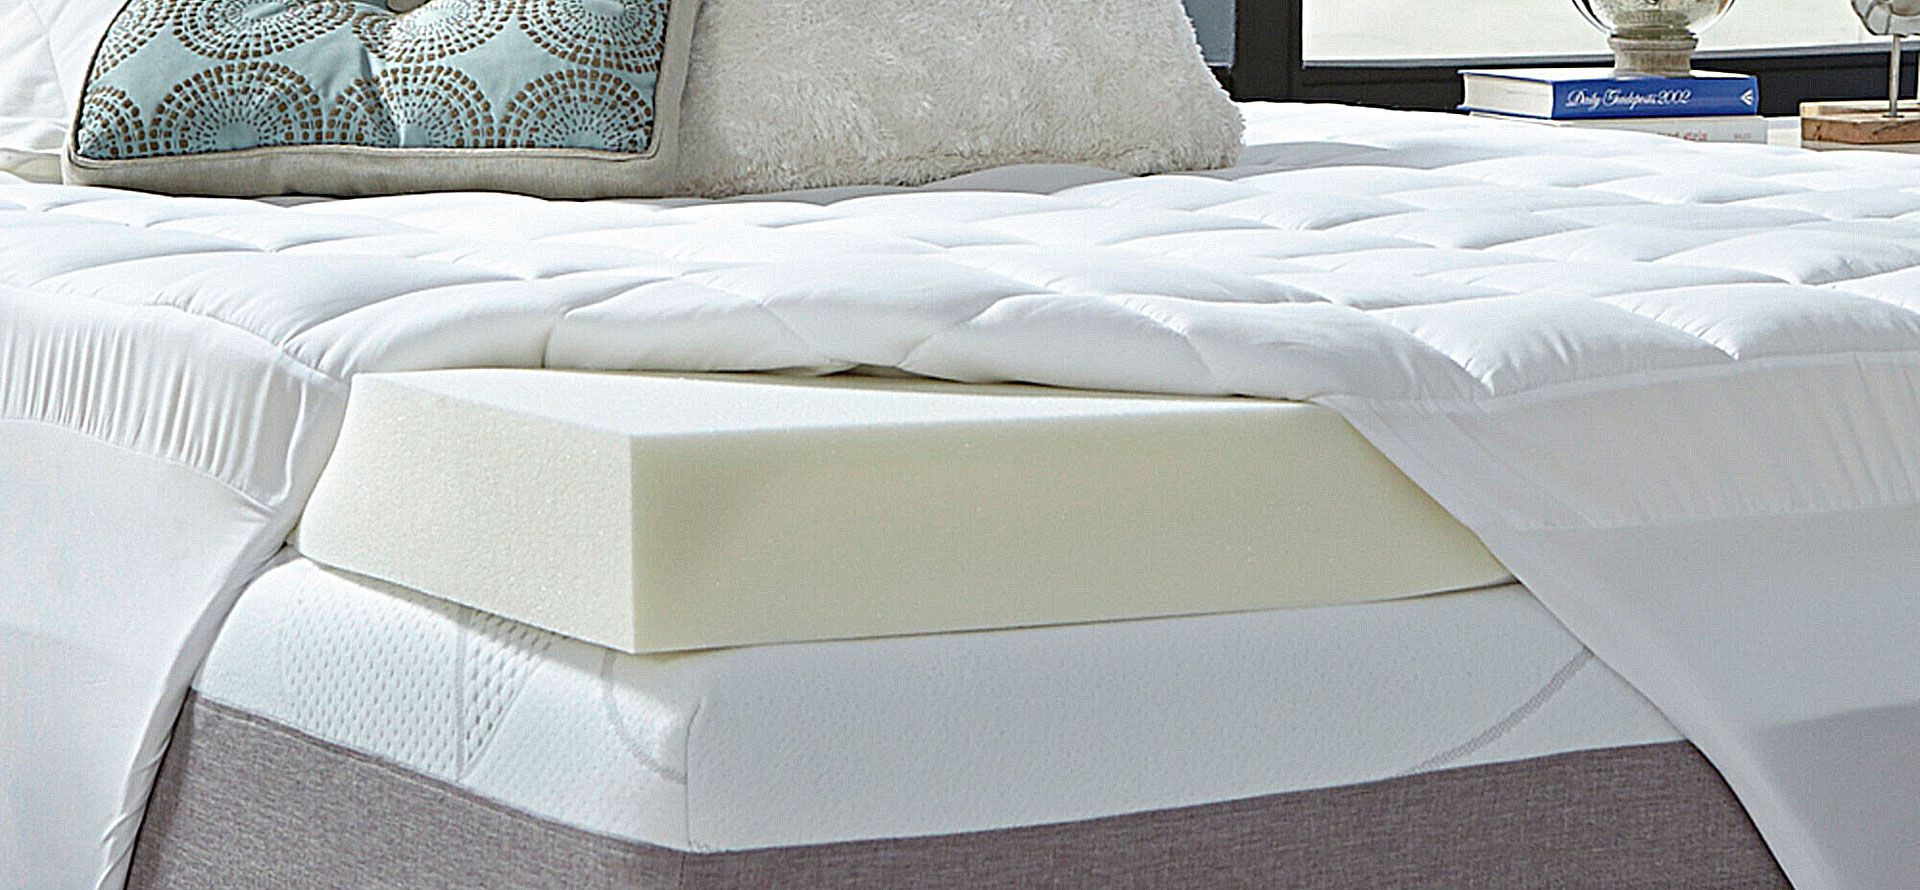 Memory foam mattress topper on the mattress.